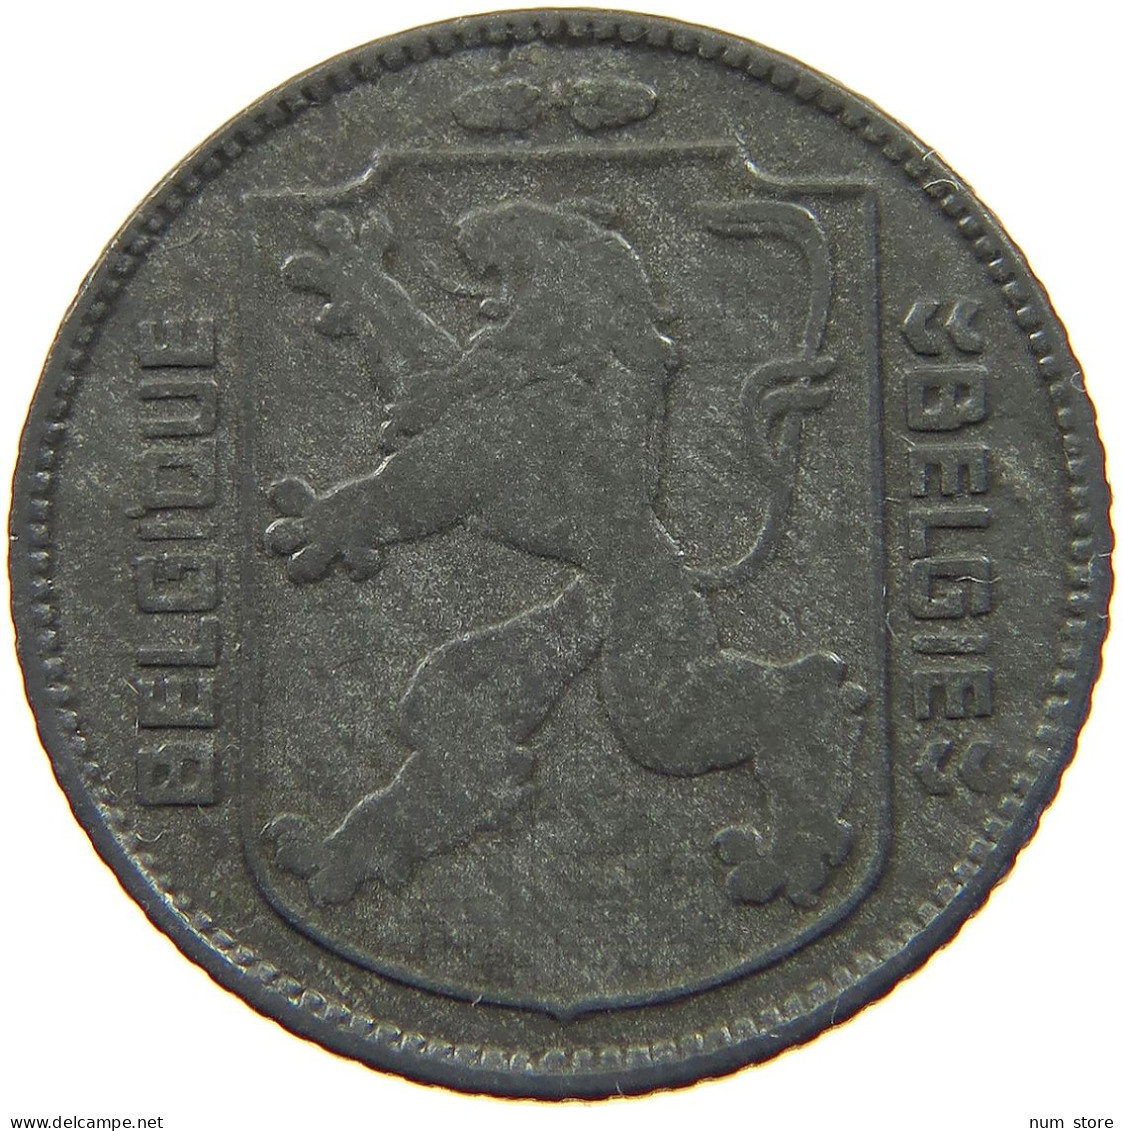 BELGIUM 1 FRANC 1943 #a006 0351 - 1 Franc